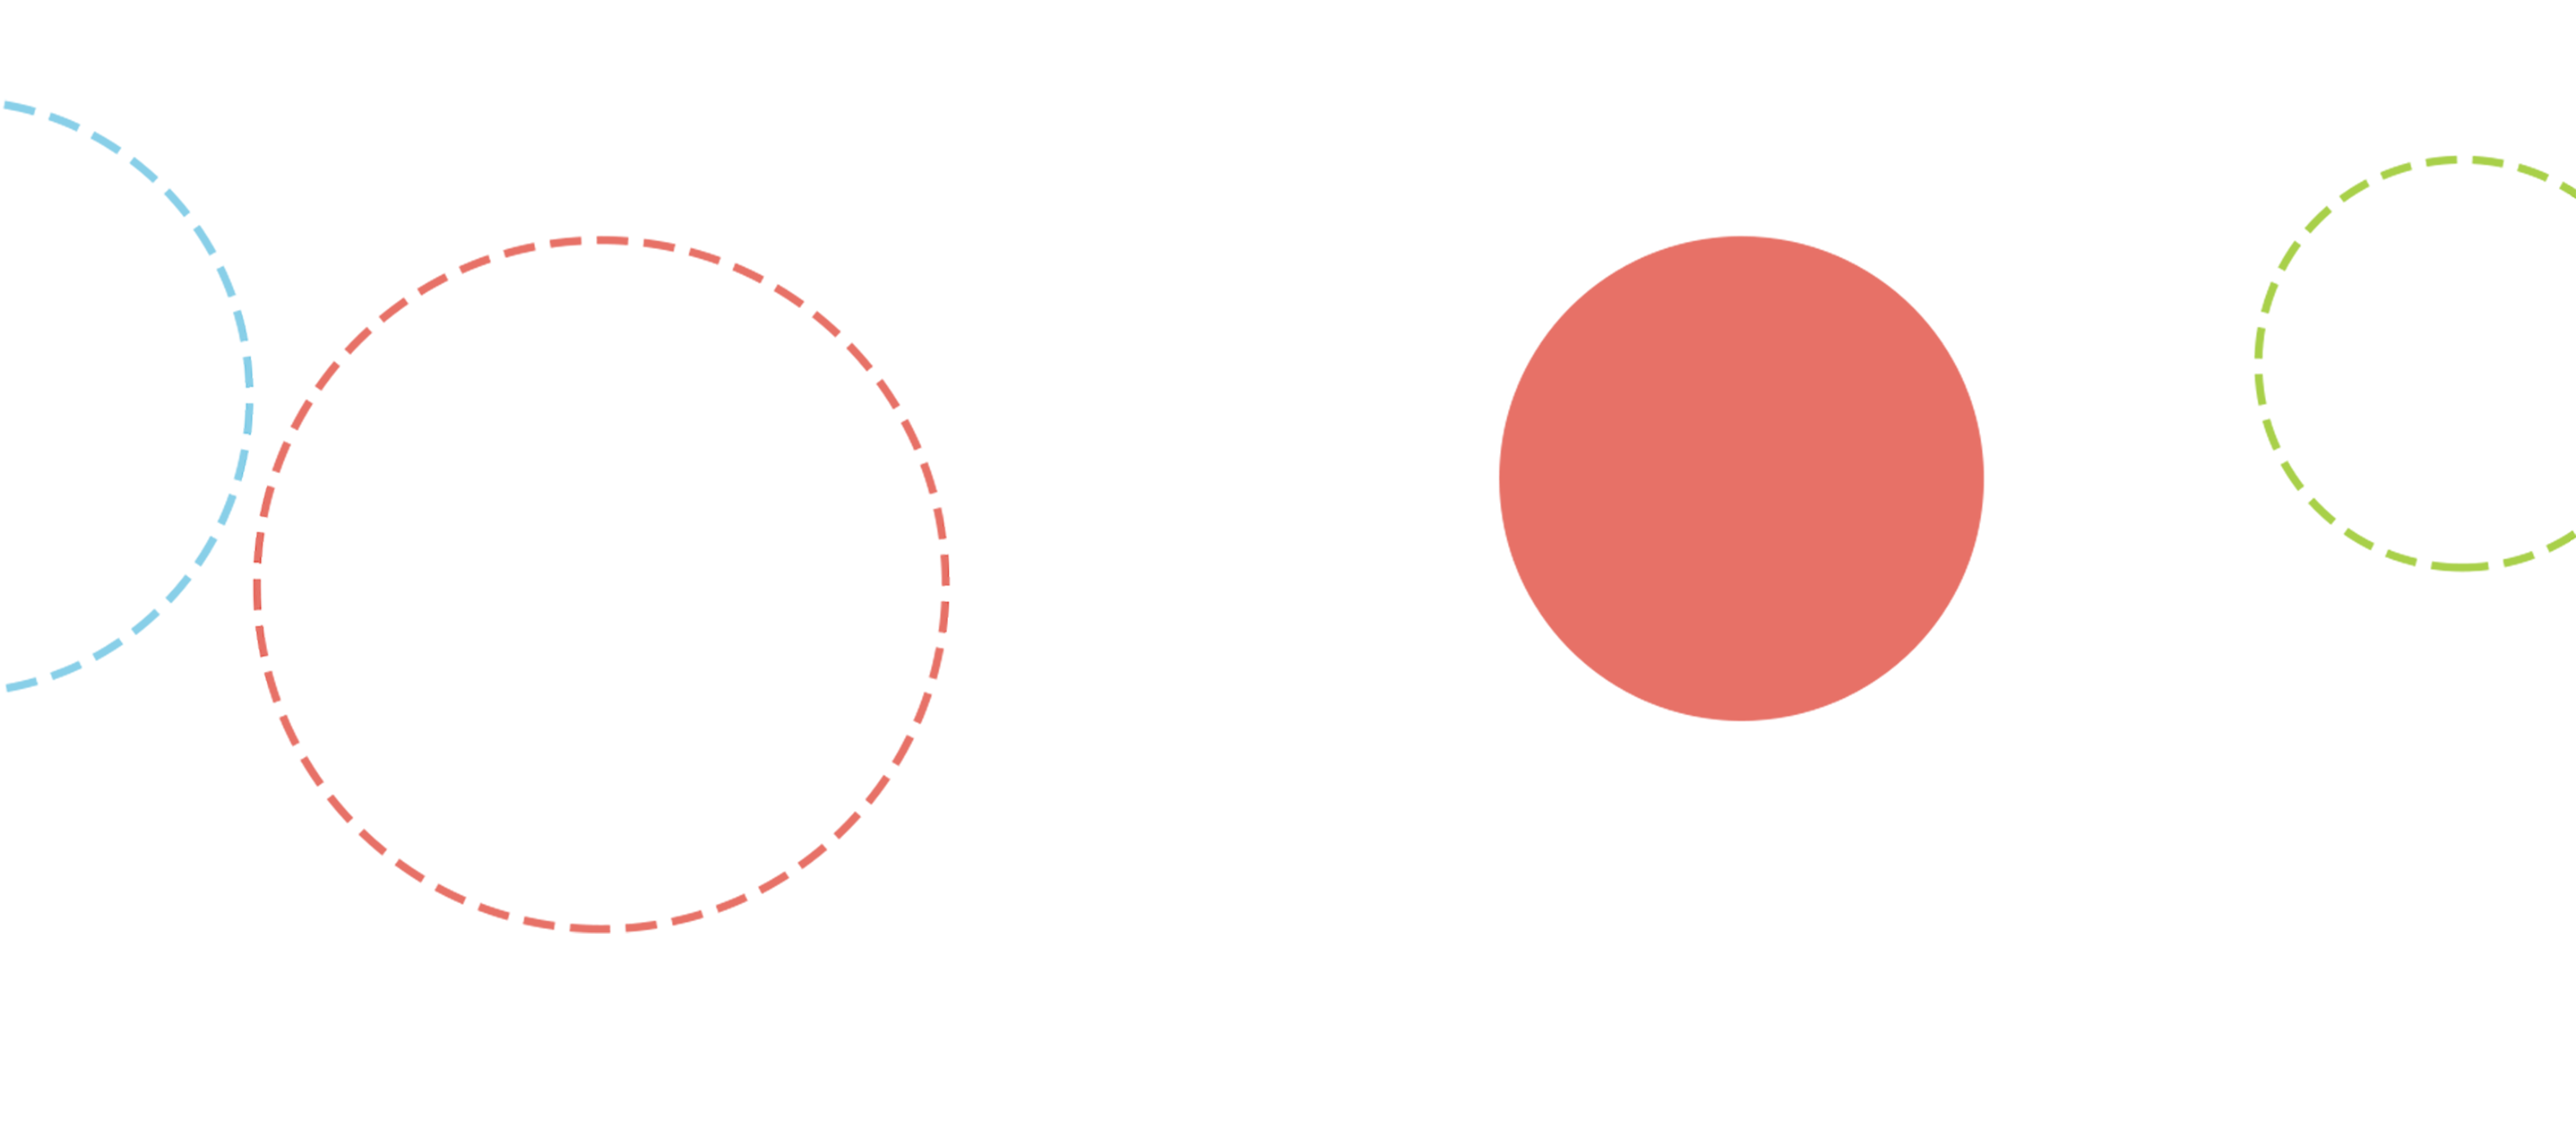 Image of dashed circles